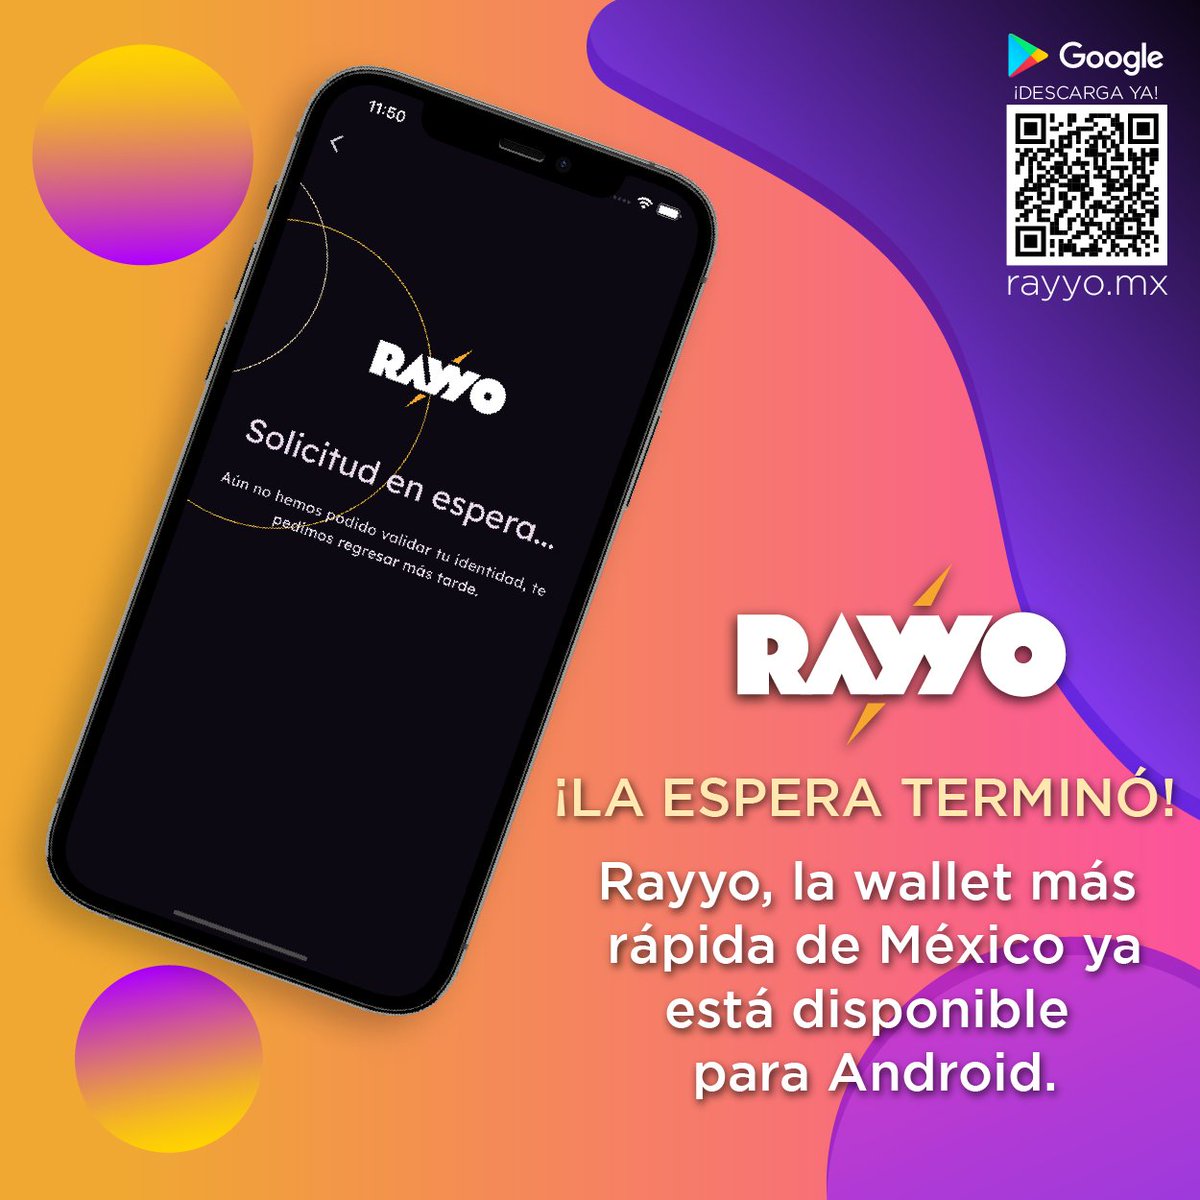 Con Rayyo, puedes llevar tus #bitcoin contigo a donde quieras. Descarga la app en #Android y disfruta de la facilidad de comprar, vender y retirar hasta 30 mil pesos diarios en los cajeros Cryptobox. ¡Seguridad y simplicidad en una sola #Wallet !
.
.
#Rayyo #Bitcoin #Cryptobox